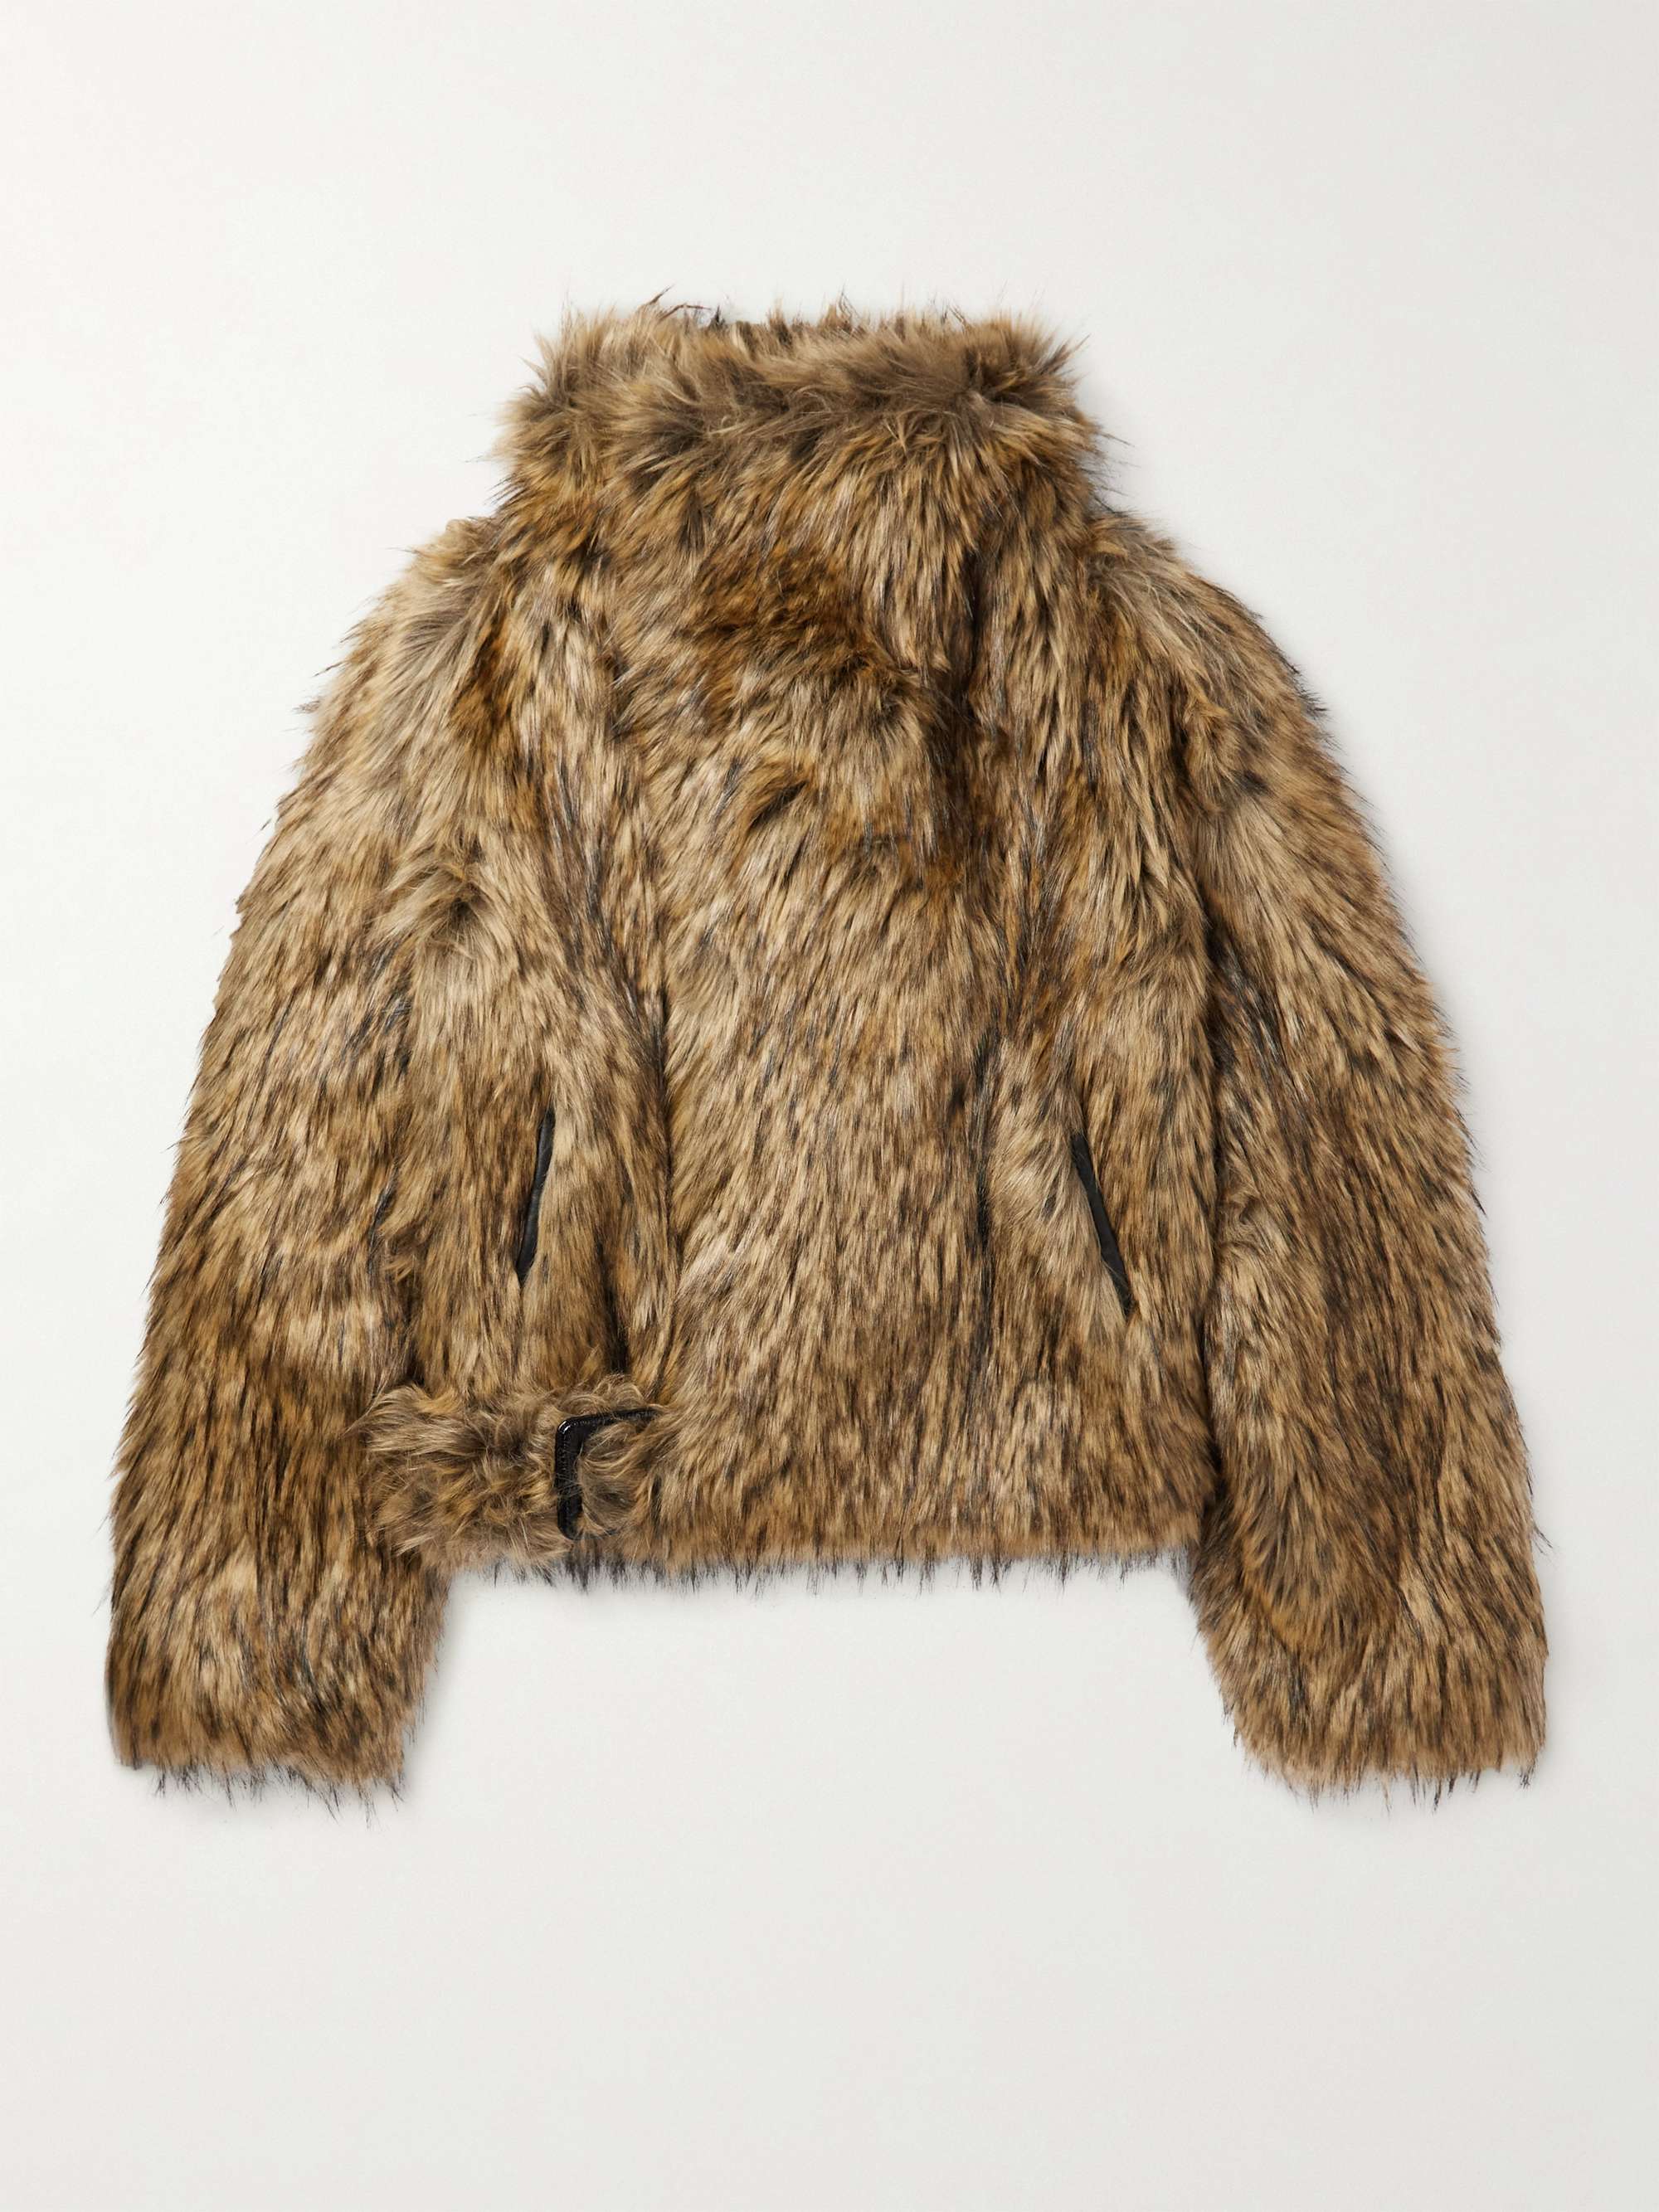 fur coat (treat ürself)